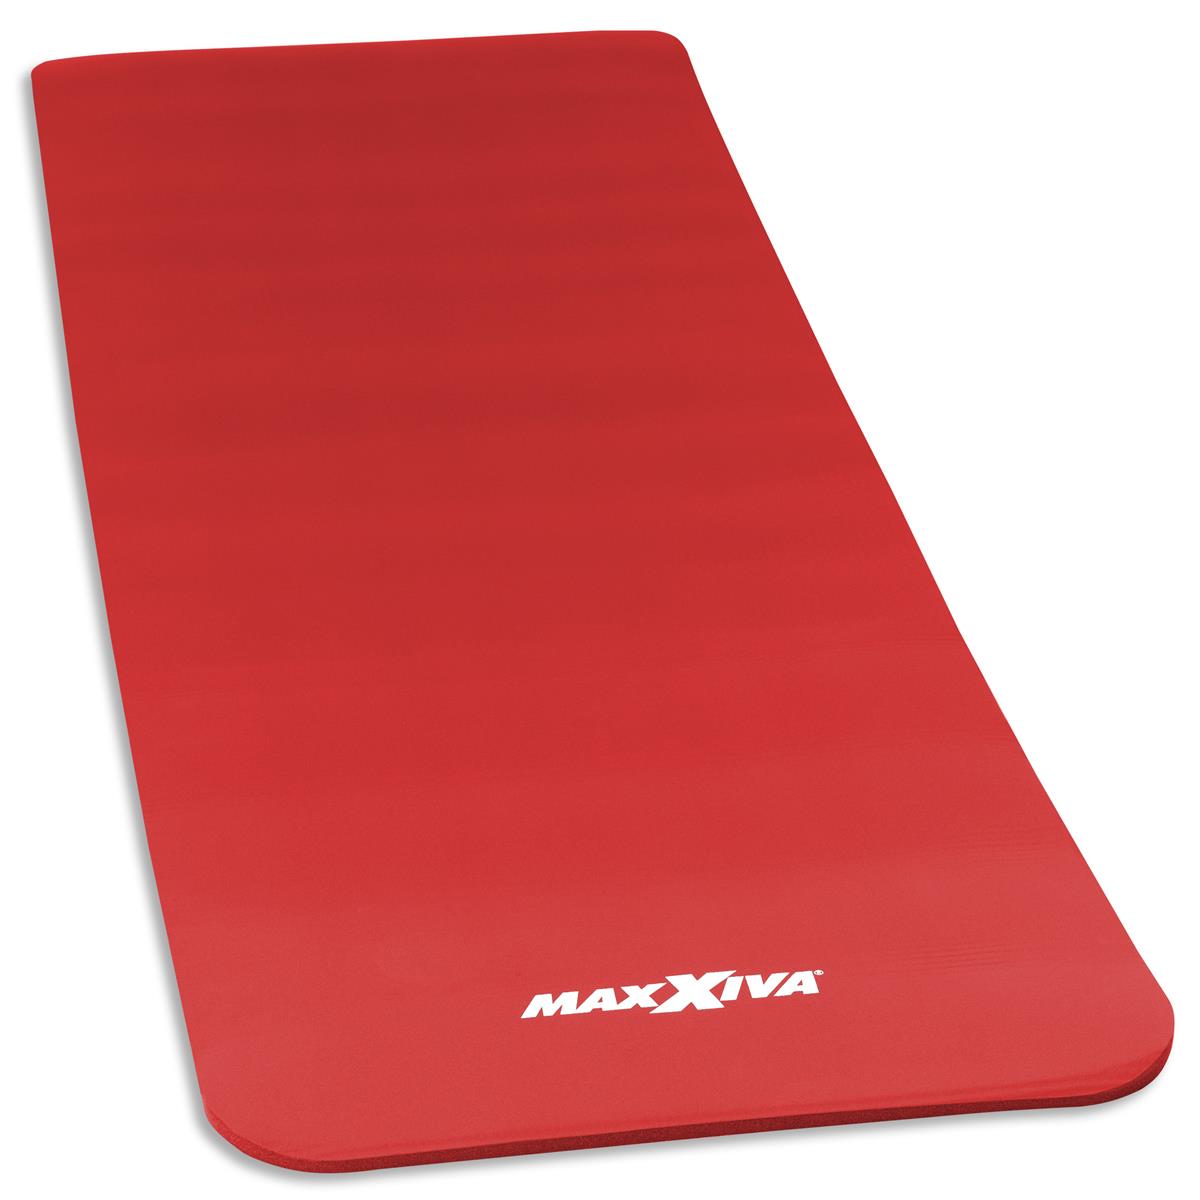 MAXXIVA Yogamatte Gymnastikmatte Fitnessmatte 190x60x1,5 cm rot schadstofffrei